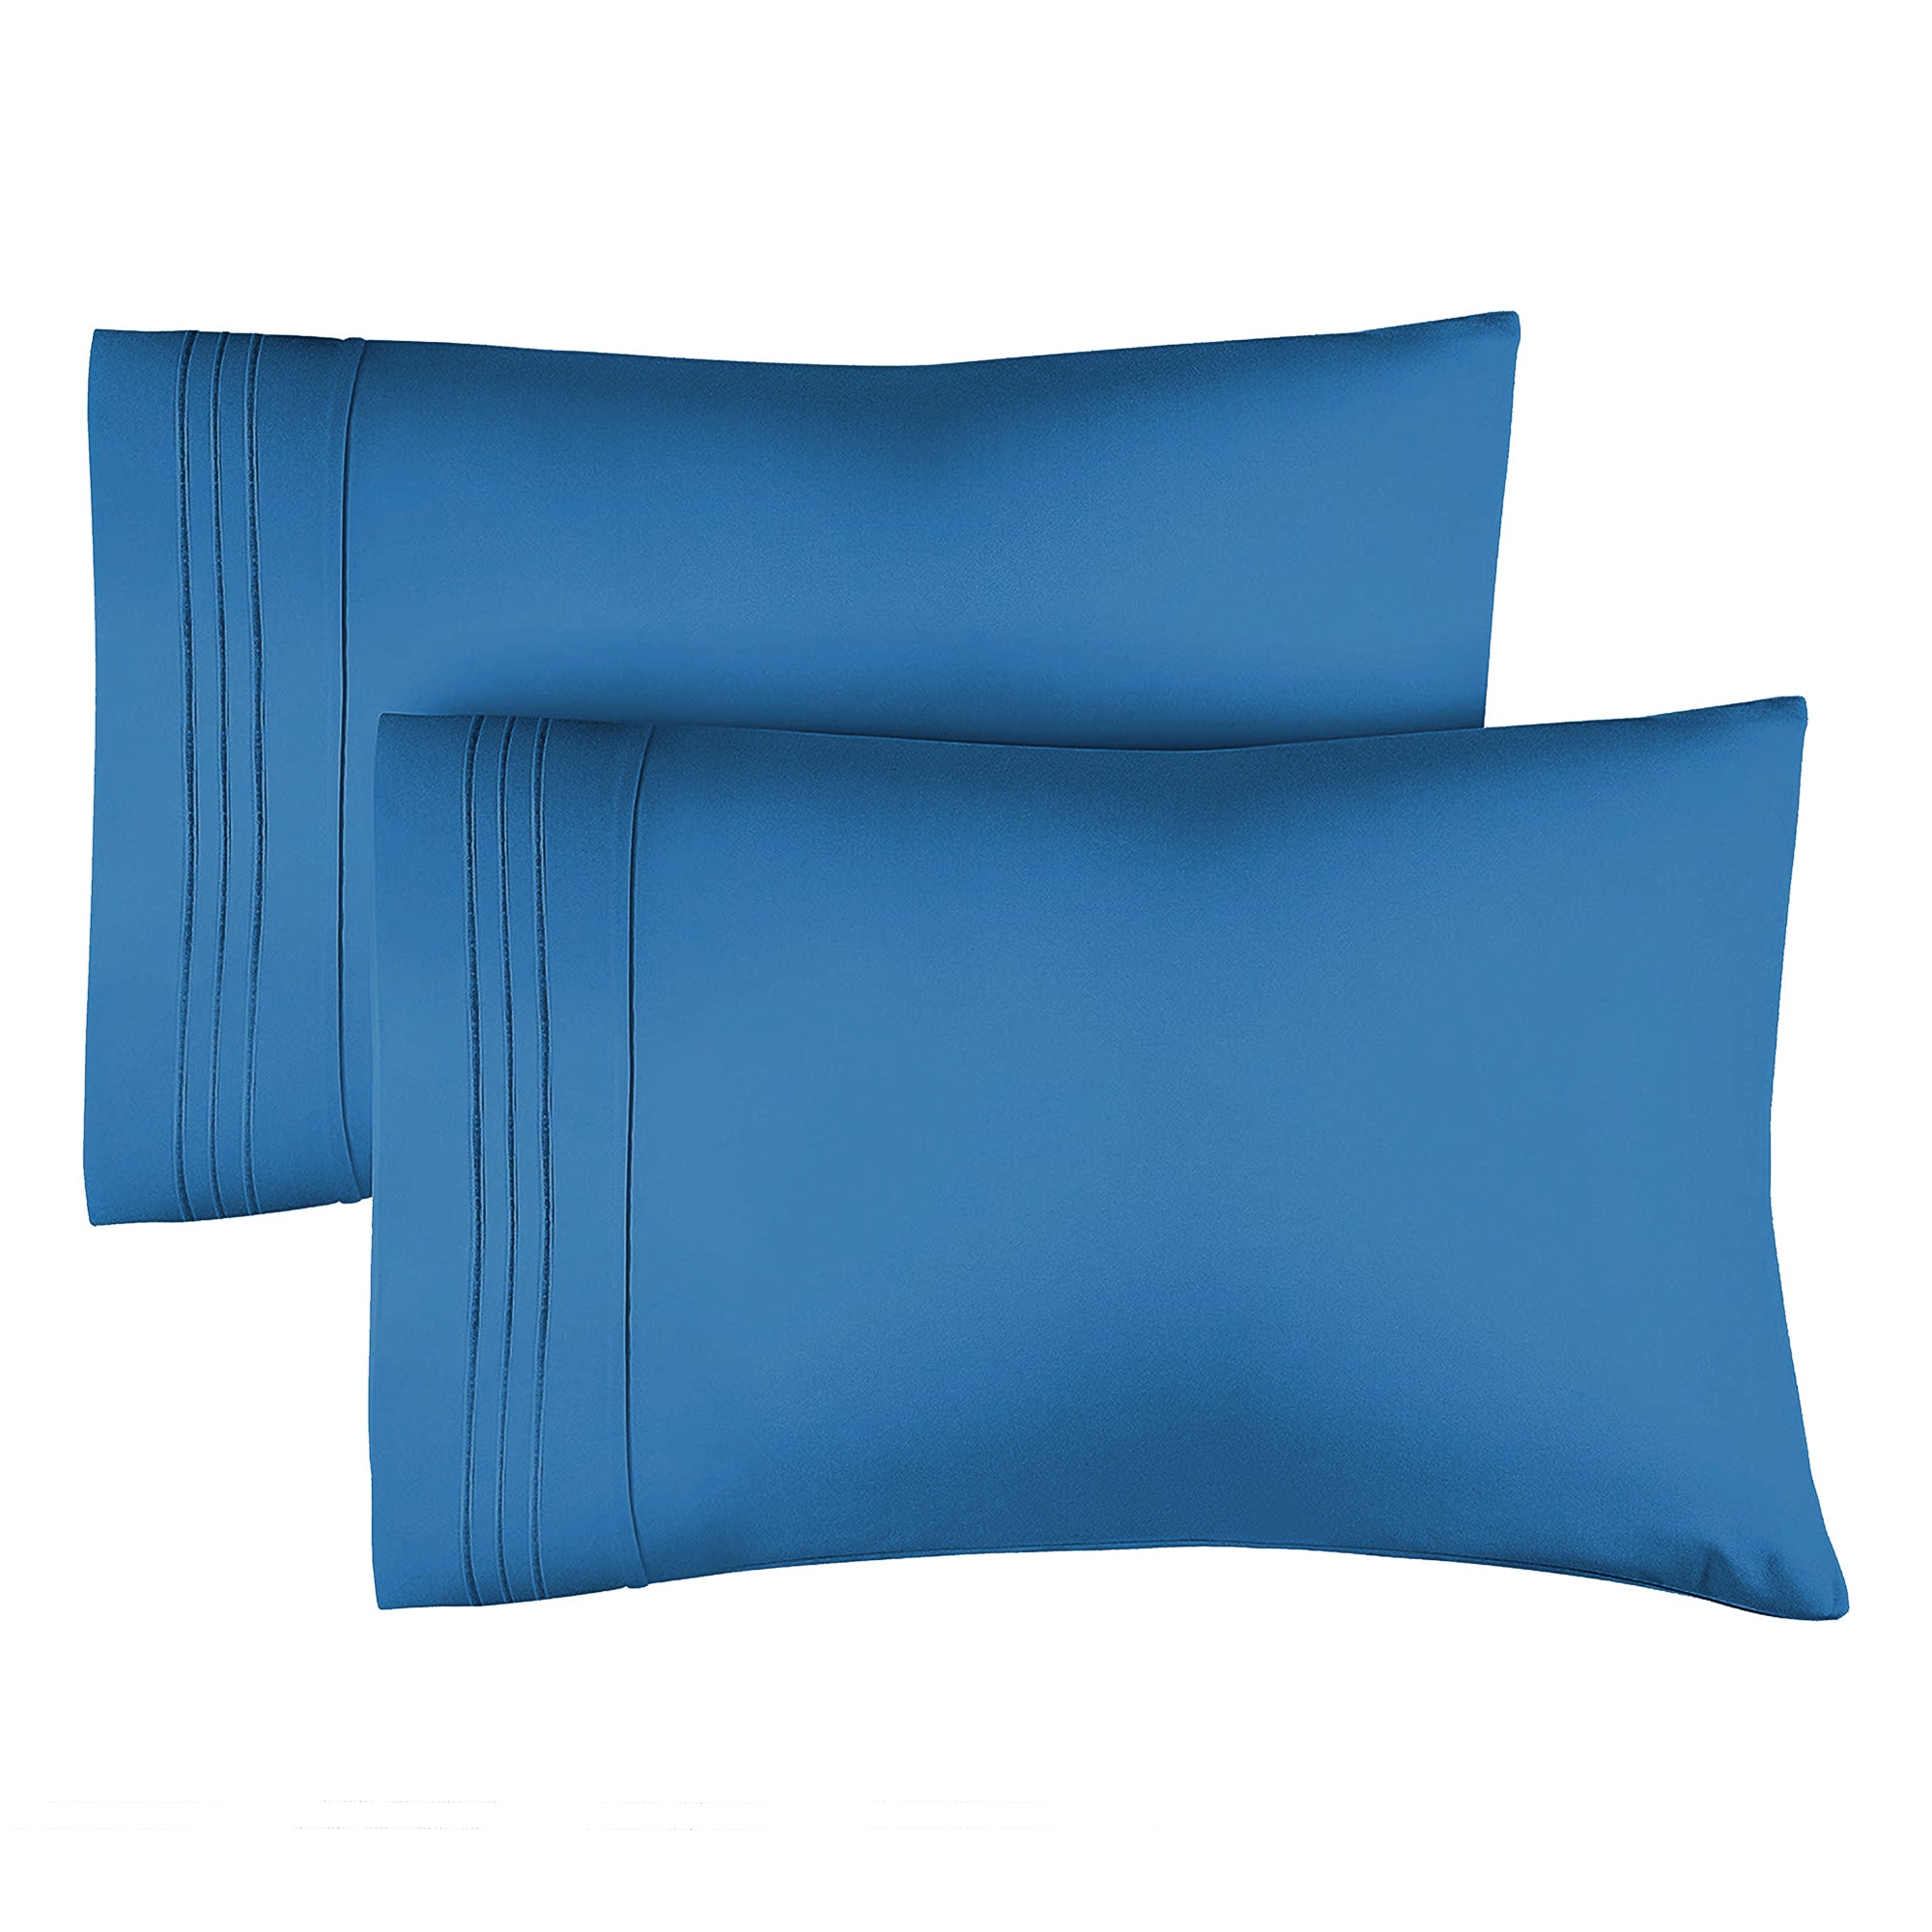 2 Pillowcase Set - Royal Blue